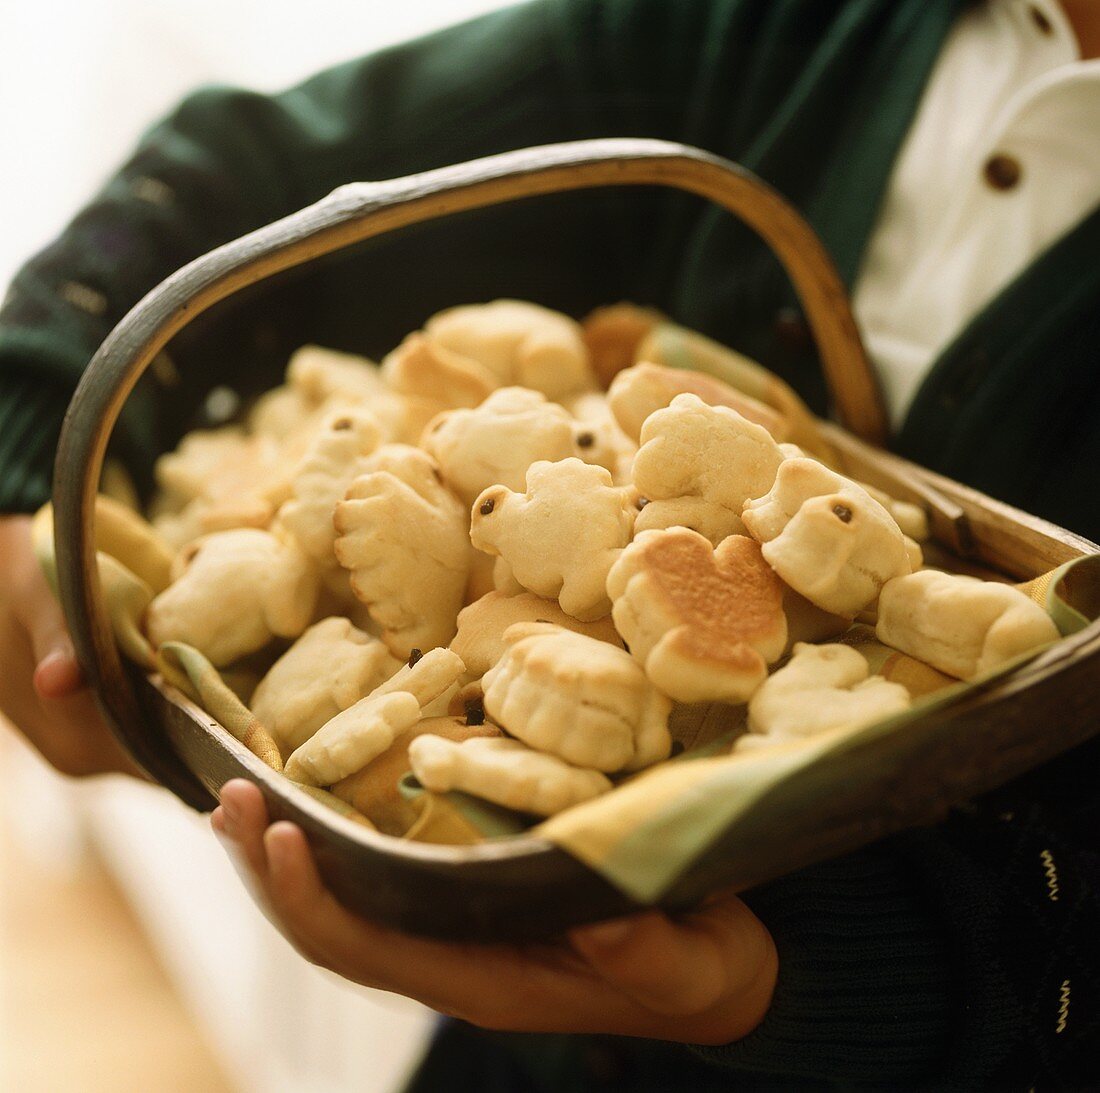 Turkey-shaped scones on tray (USA)